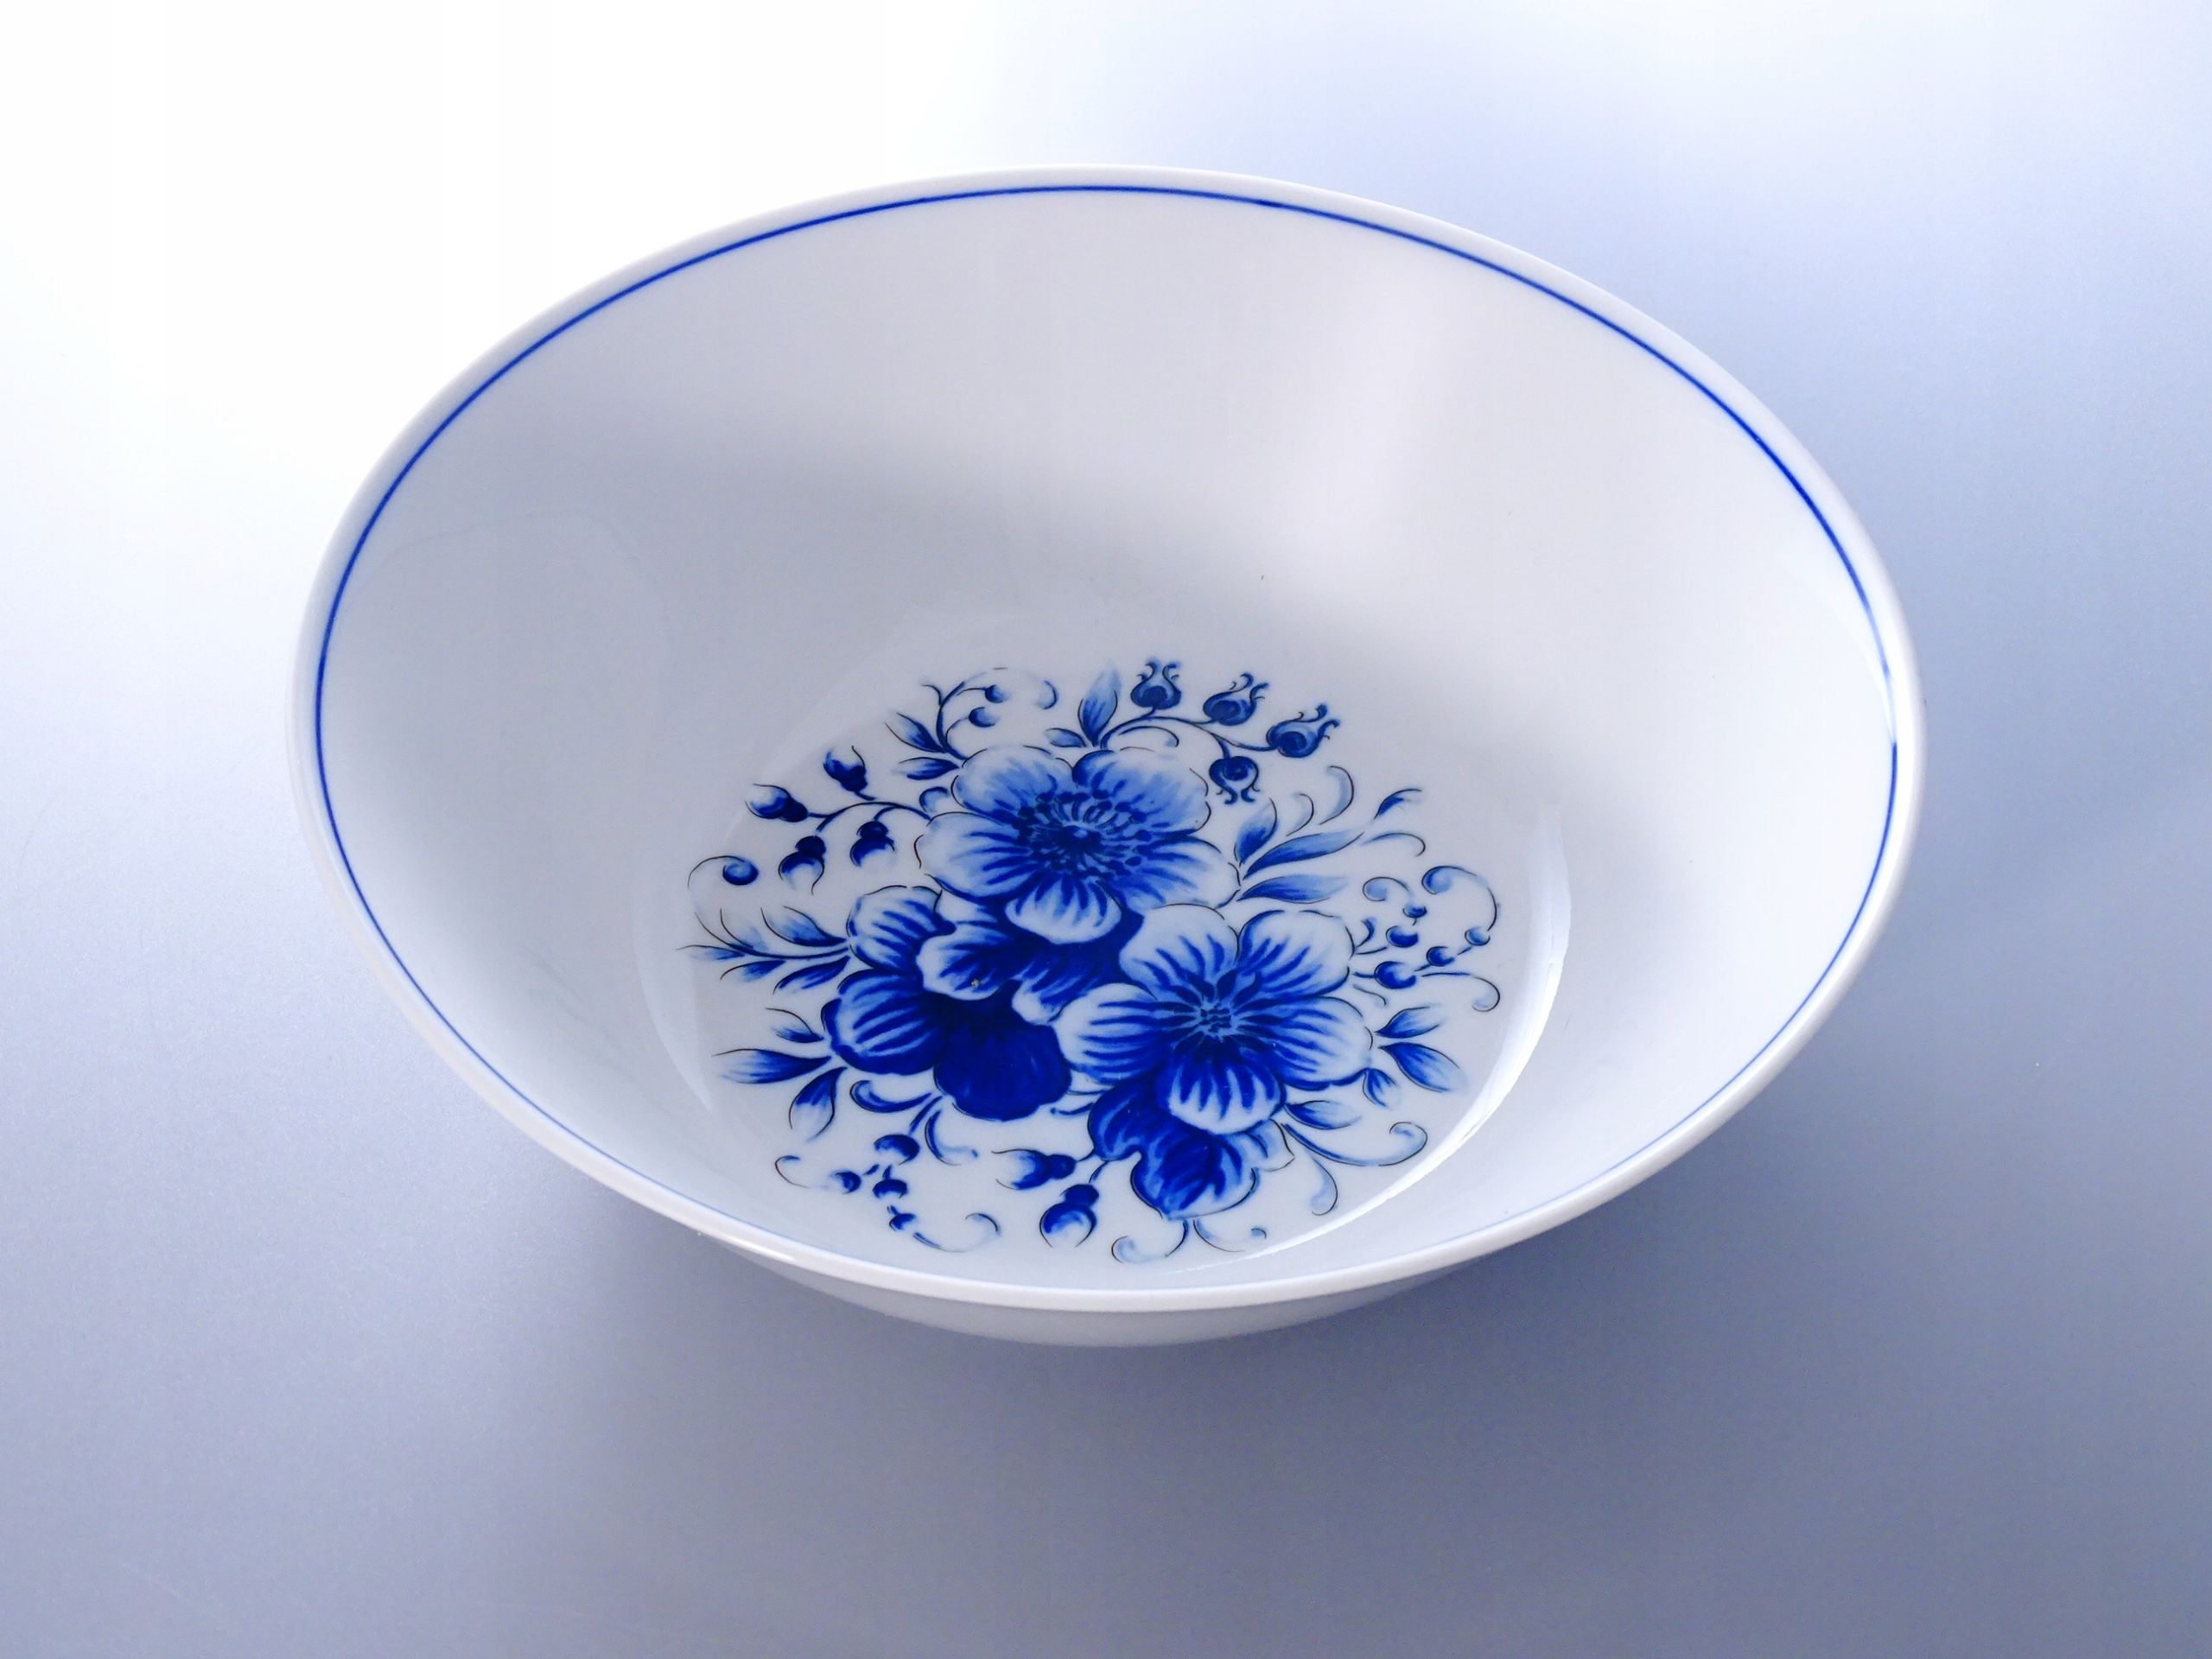 piękna misa salaterka porcelanowa kobaltowe kwiaty